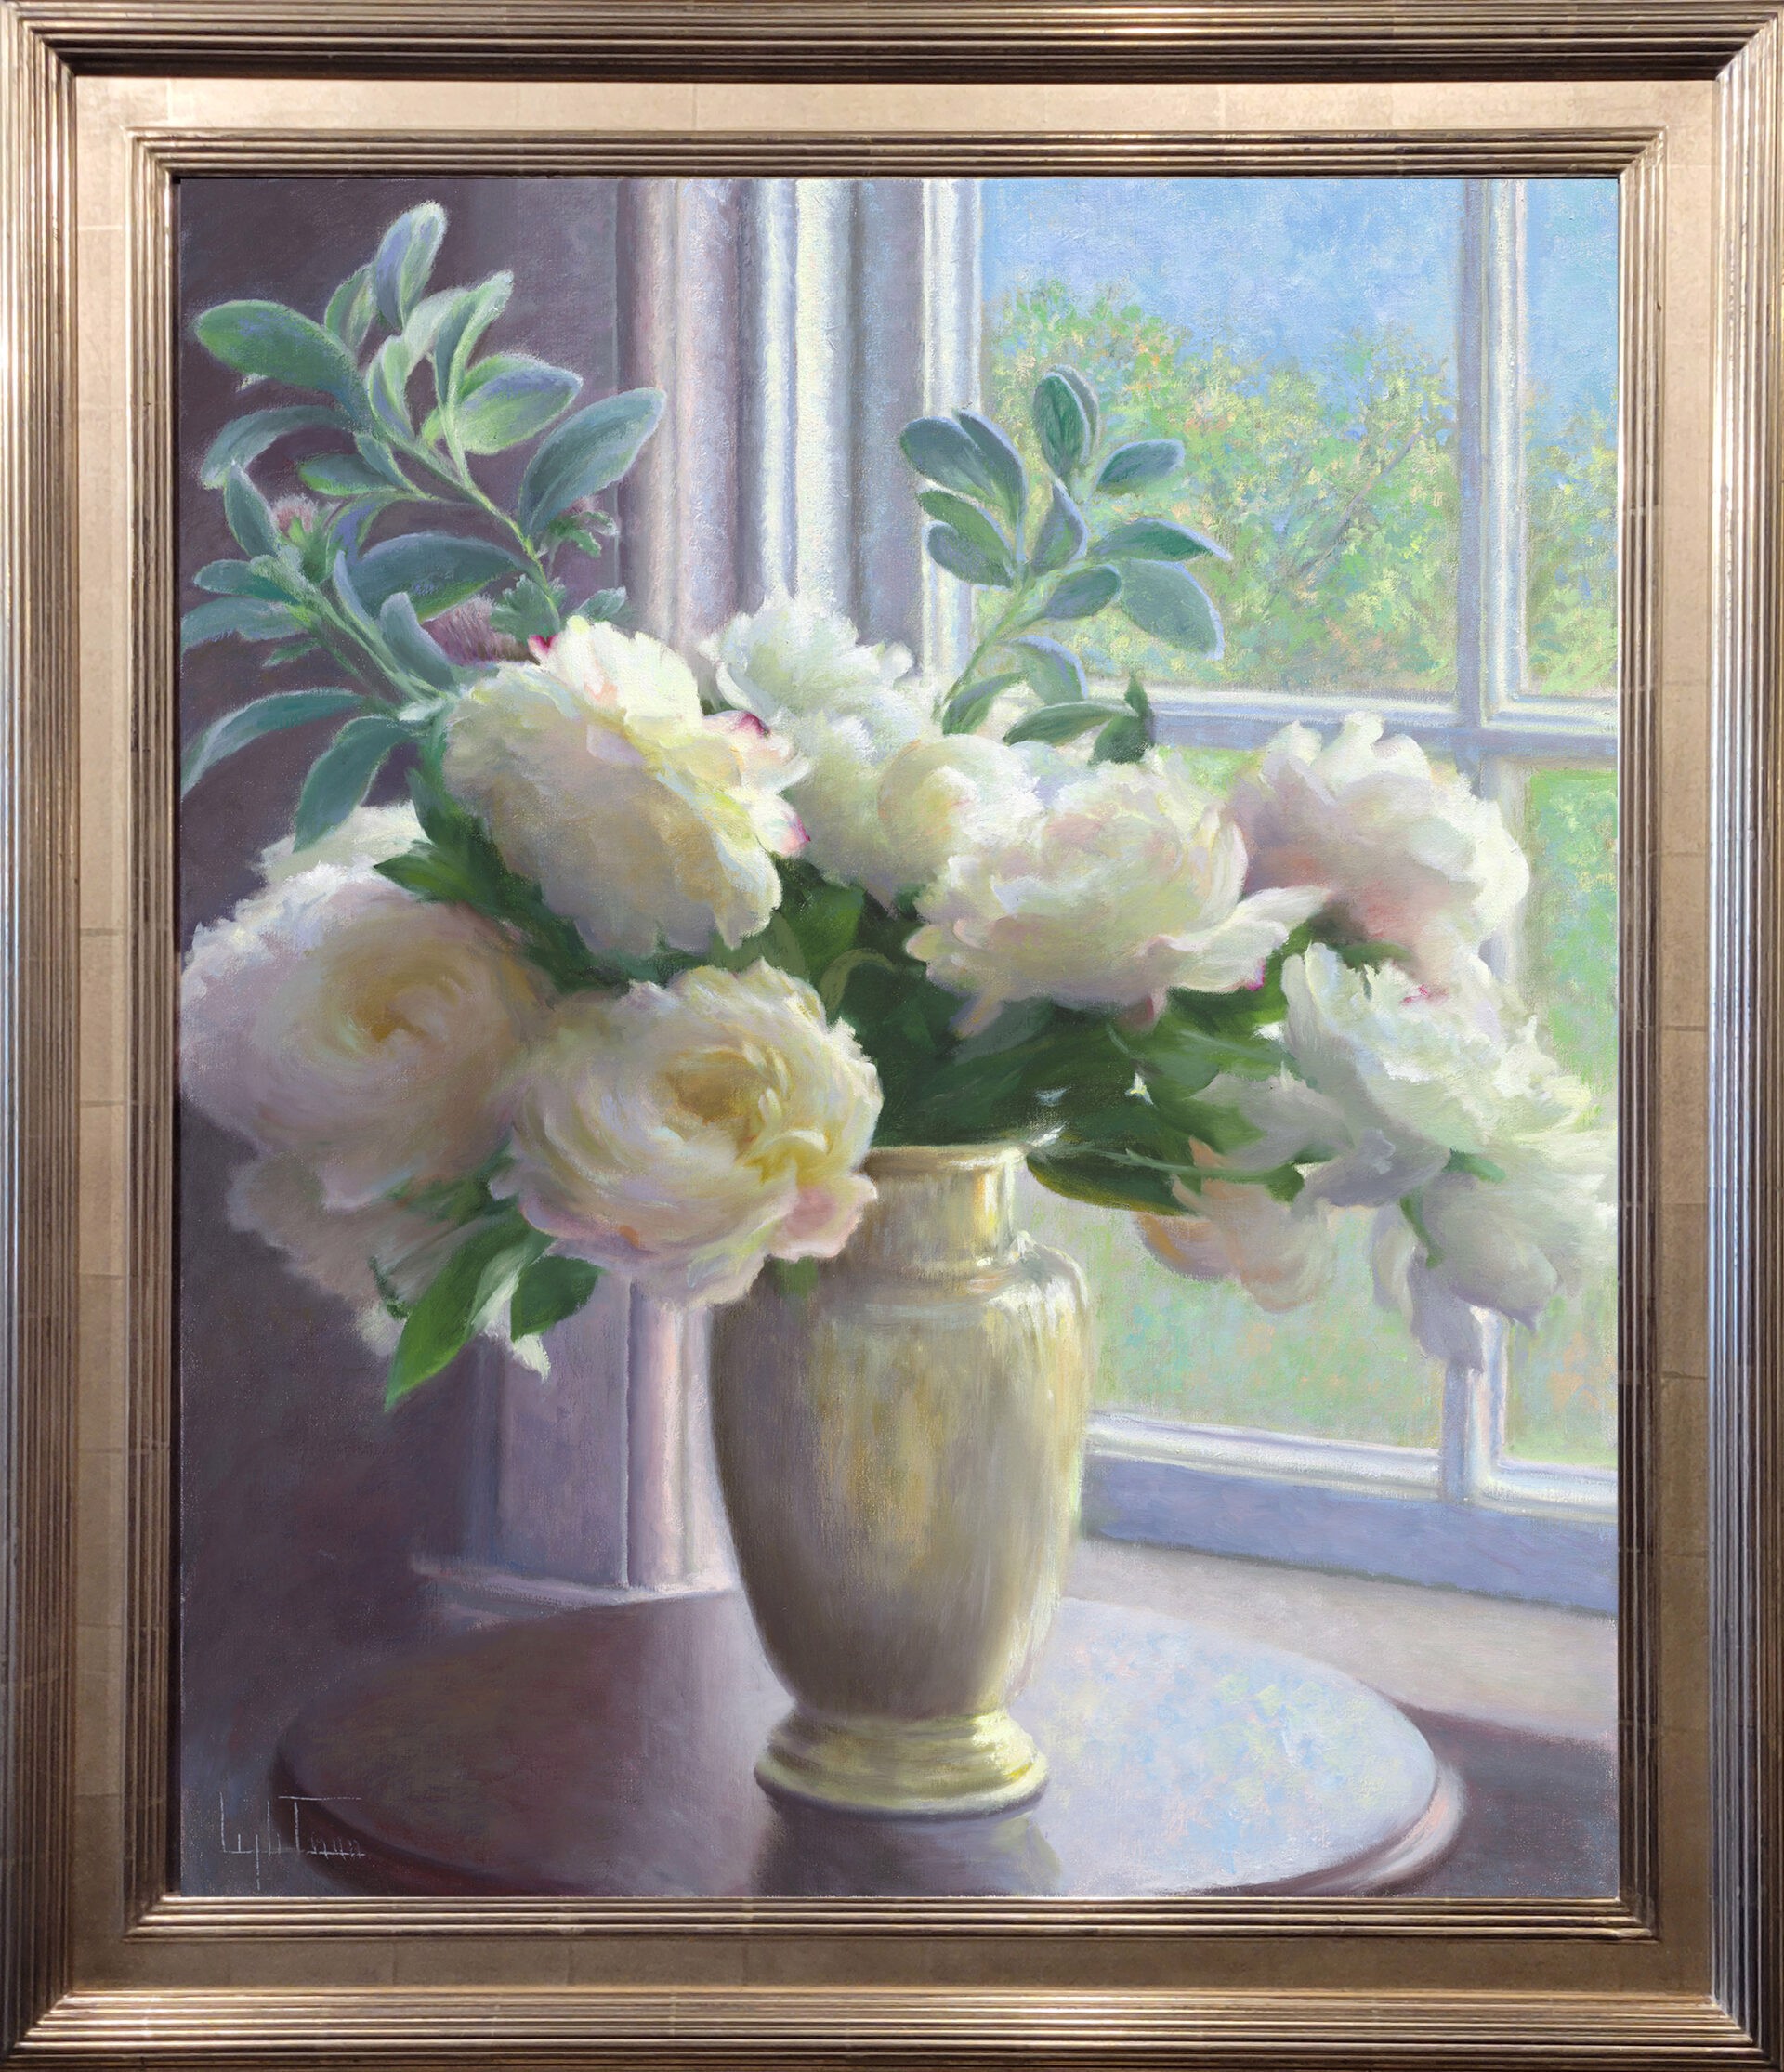 Arrangement in the Window by Jean Lightman